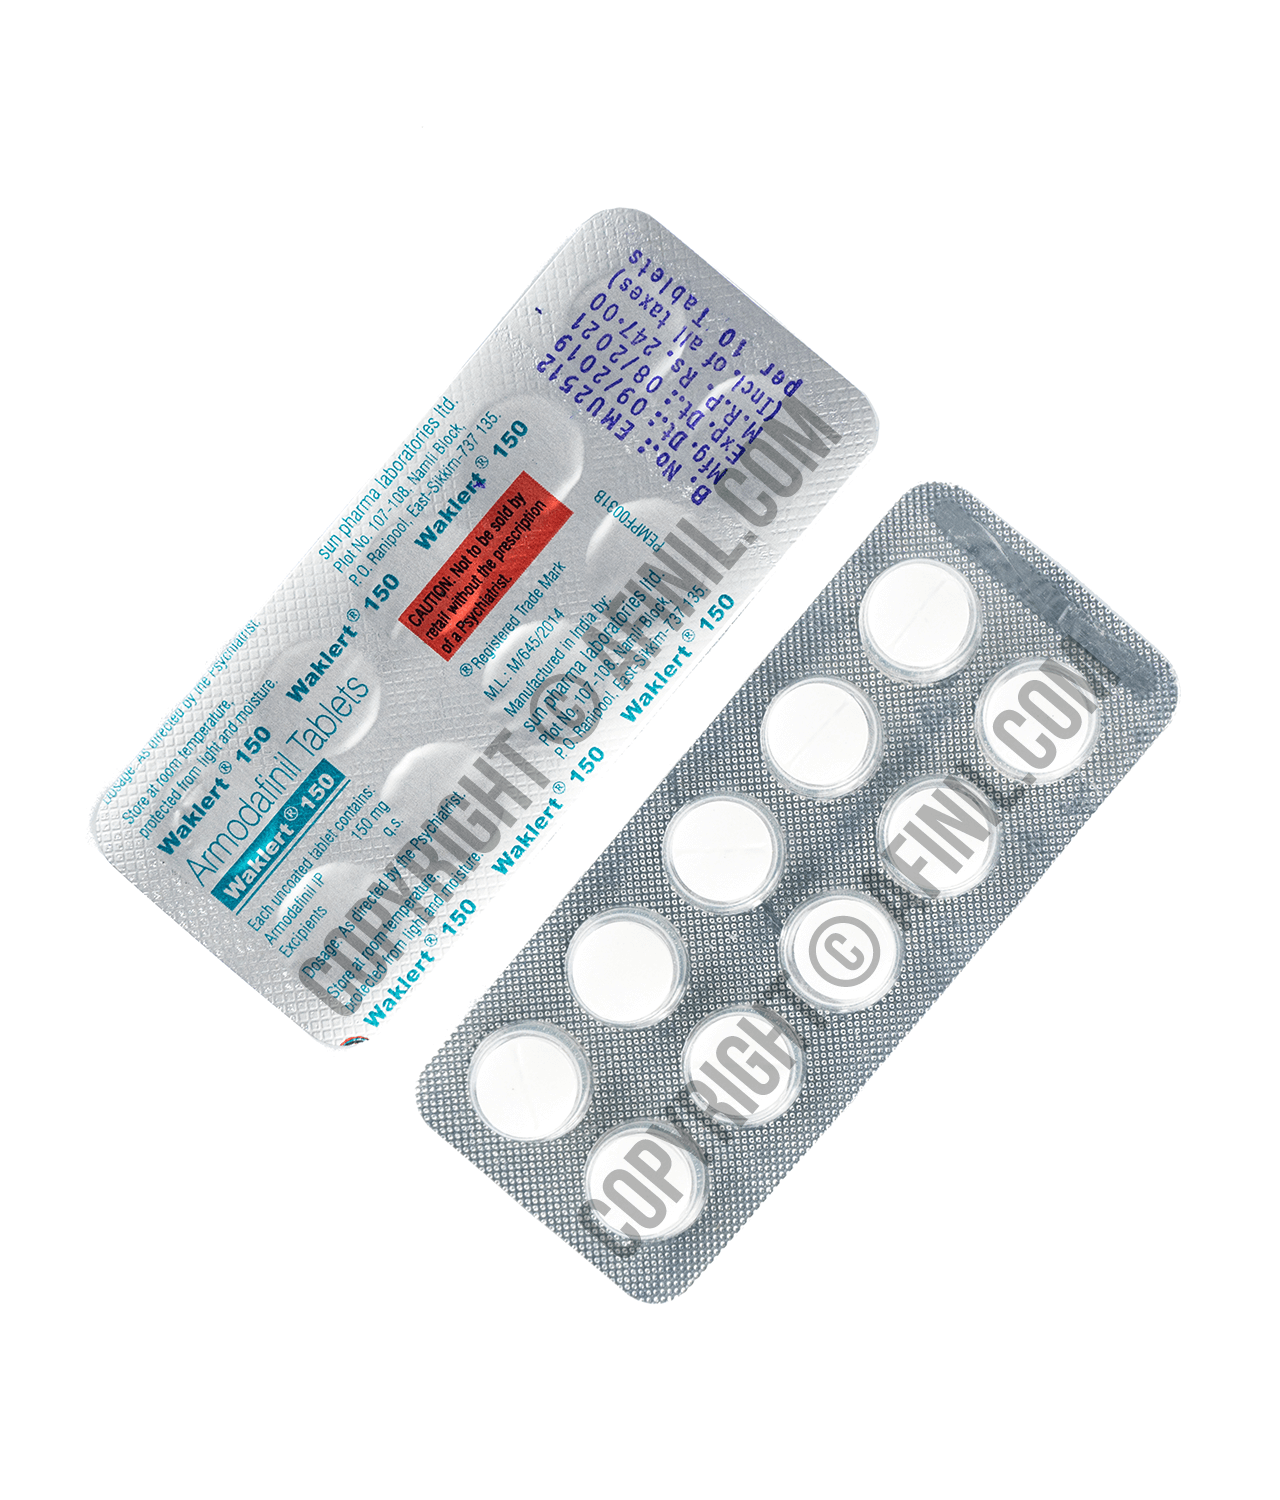 Nuvigil 50 mg price